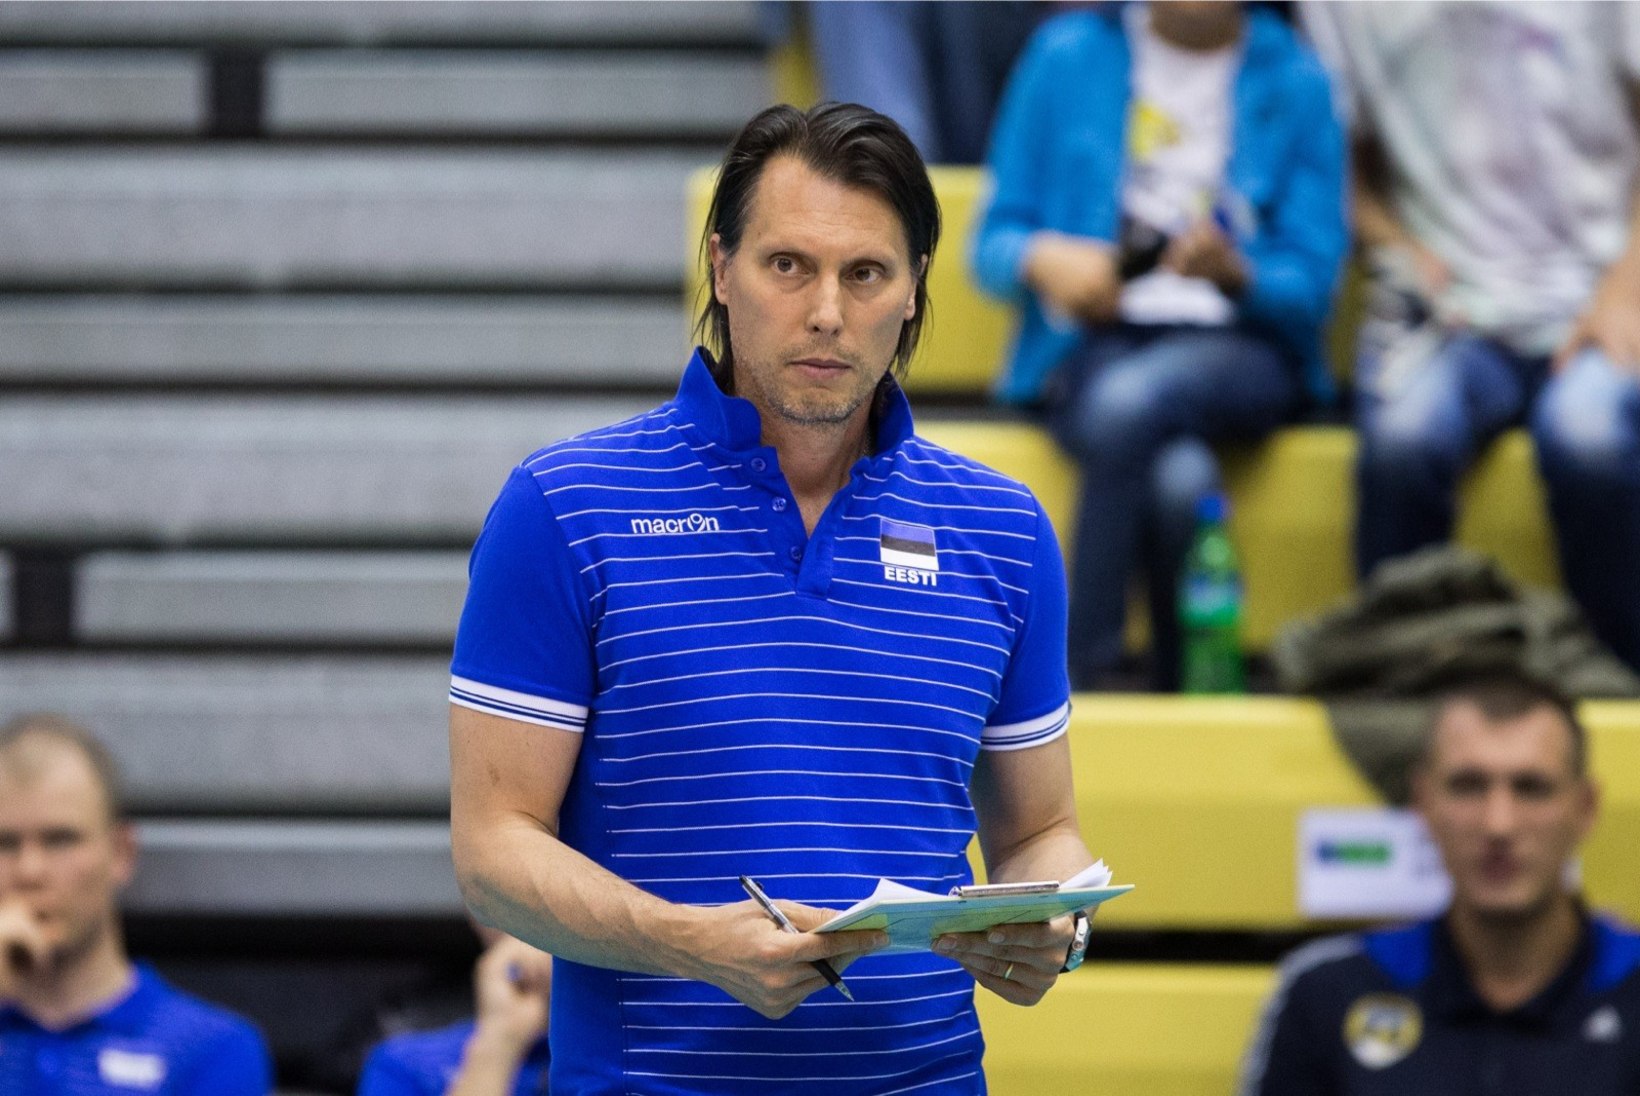 Eesti võrkpallikoondise peatreener enne Euroopa liiga poolfinaali: kõik mängud tulevad rasked